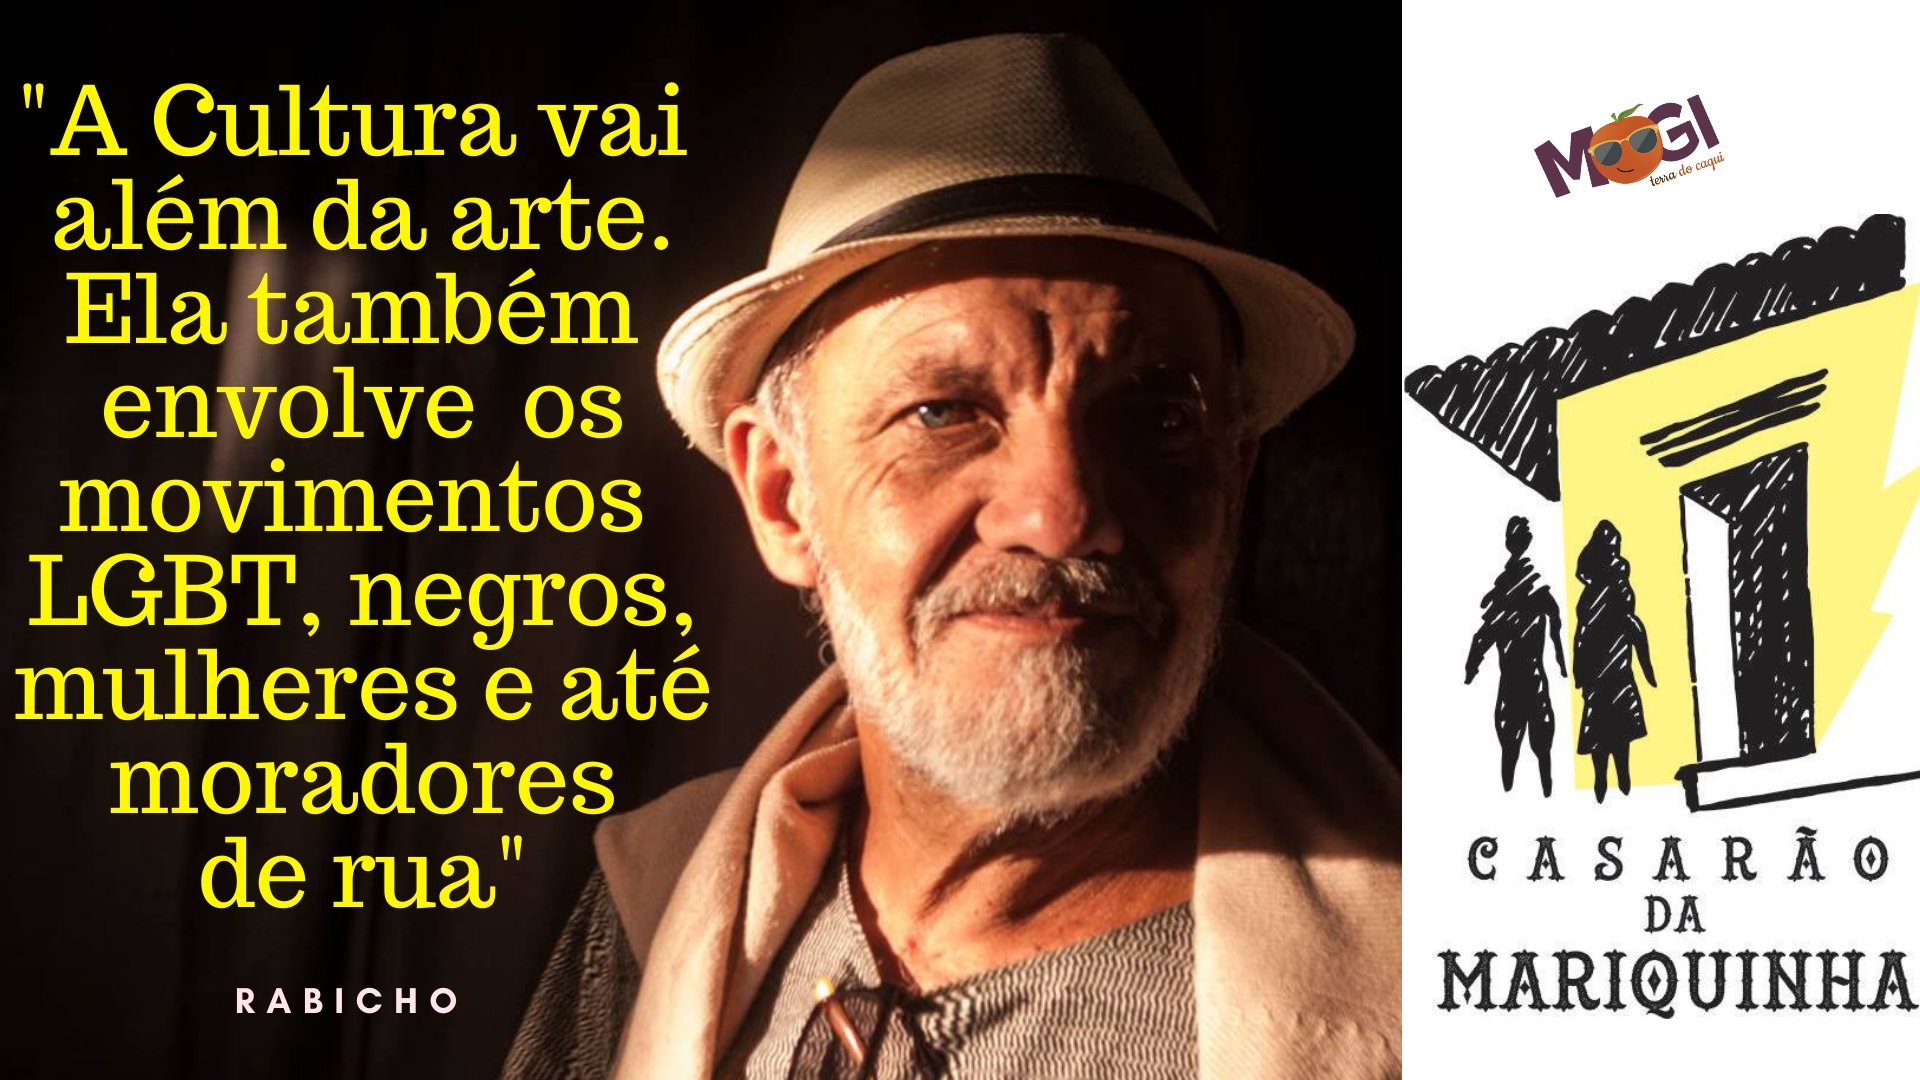 CASARÃO DA MARIQUINHA - Palco da diversidade cultural e artística de Mogi das Cruzes - SP